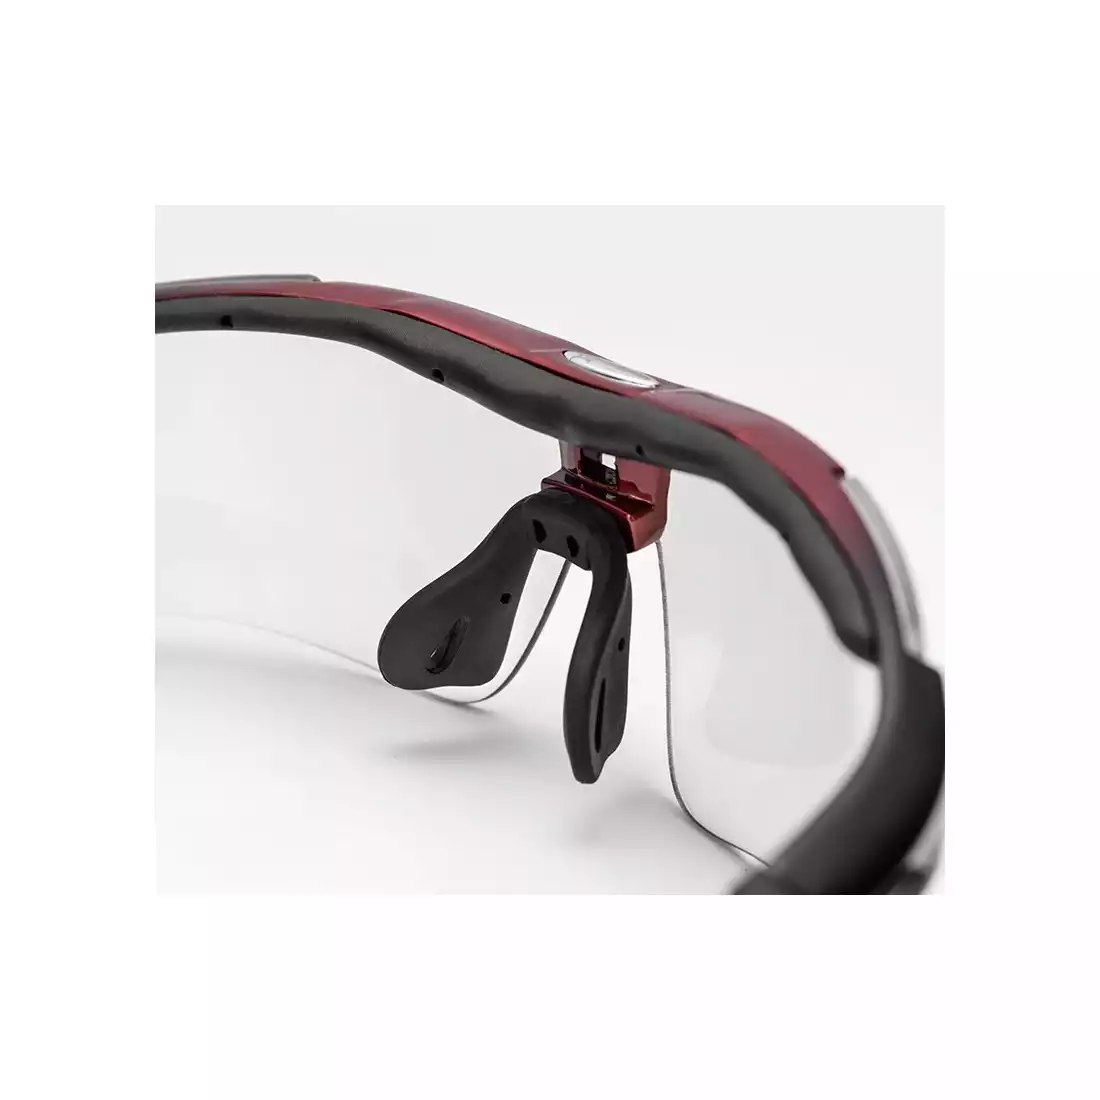 Rockbros okulary sportowe z fotochromem + wkładka korekcyjna red 10141